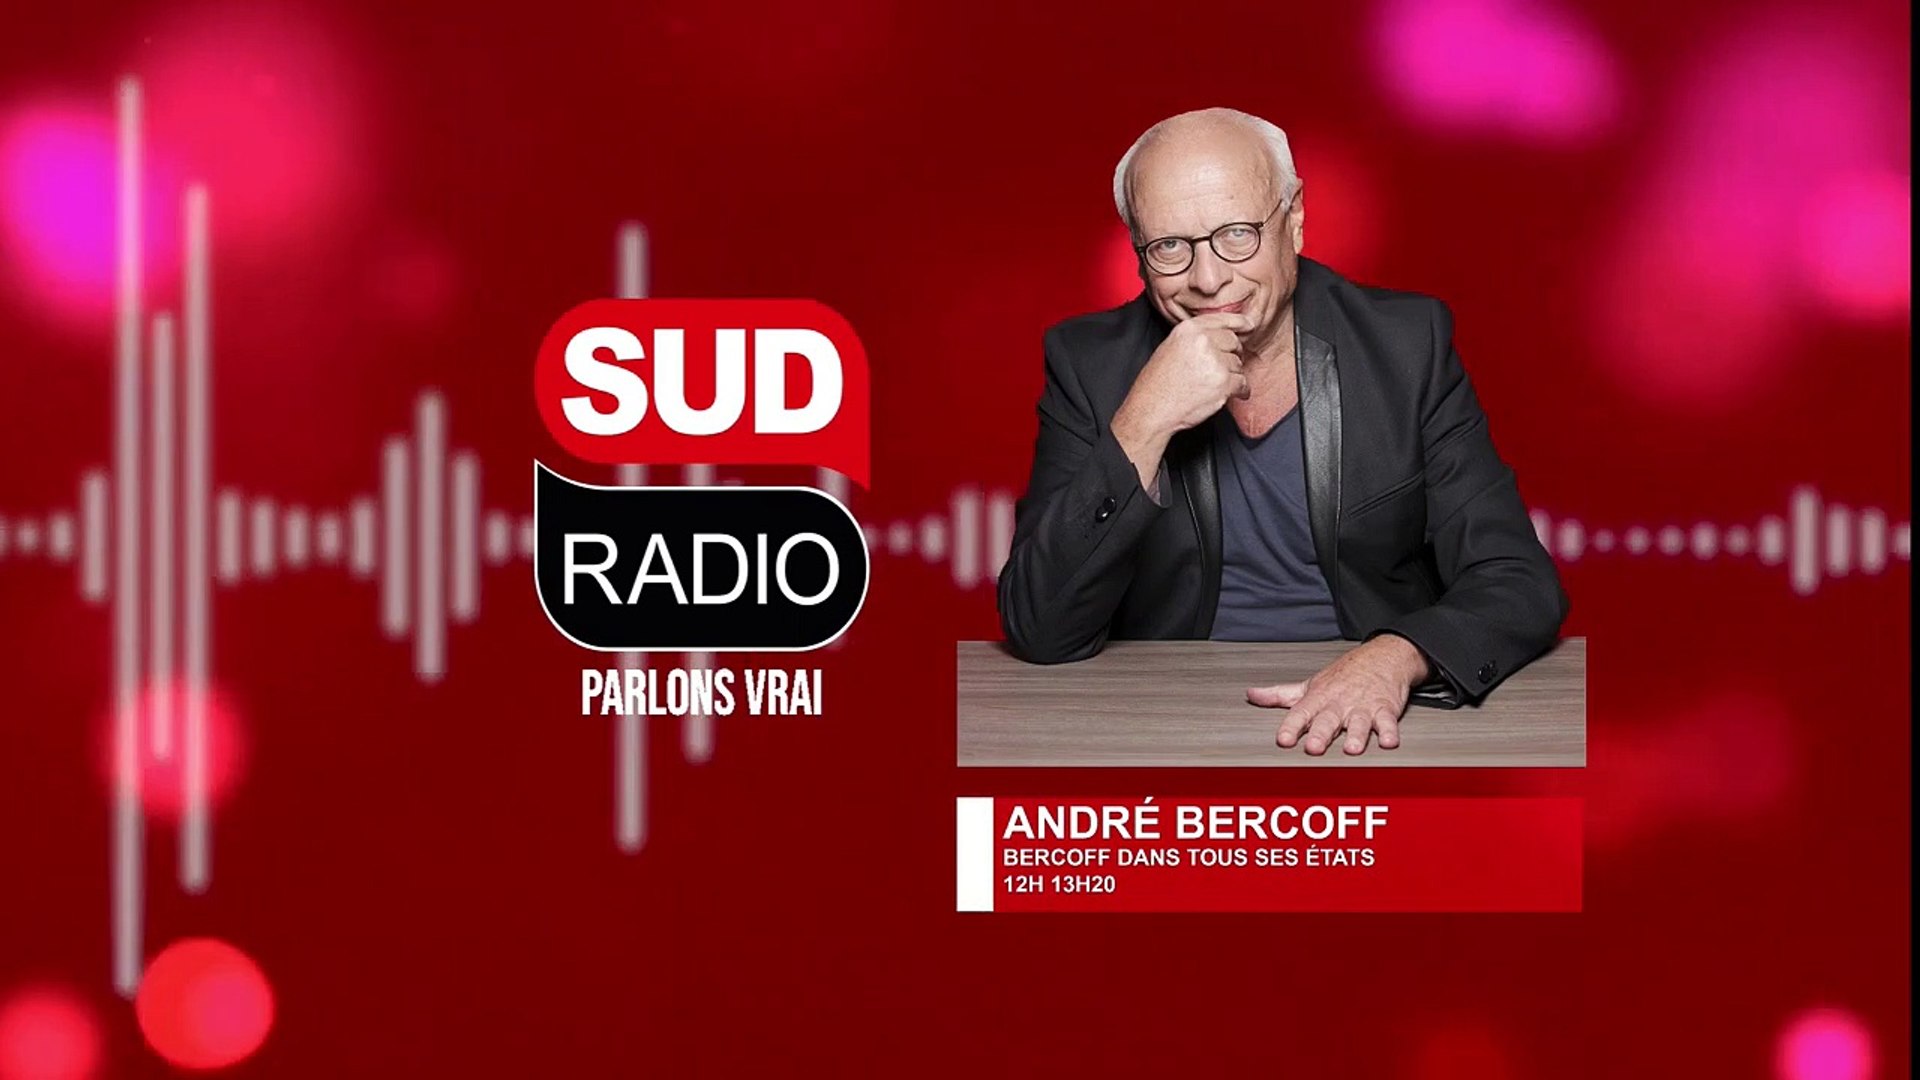 Alain Houpert -"Le Sénat est entré en résistance !" - Vidéo Dailymotion